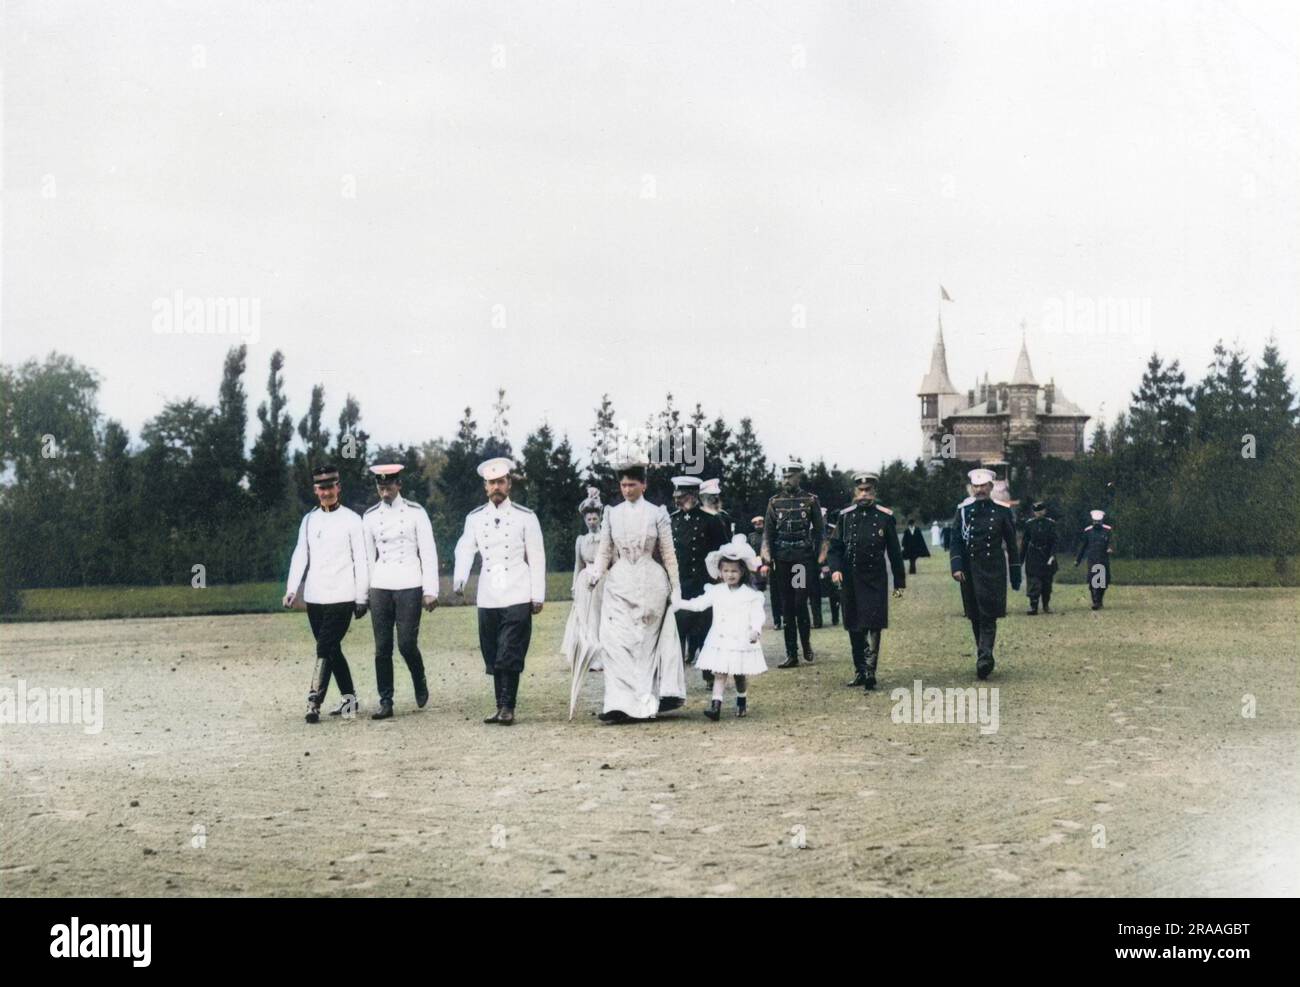 Zar Nicholas II. Von Russland spaziert durch die Landschaft von Krasnoe Selo in einem großen Gefolge, zu dem seine Frau Alexandra Feodorowna, eine seiner Töchter, andere Familienmitglieder und mehrere Beamte gehören. Datum: Ca. 1901 Stockfoto